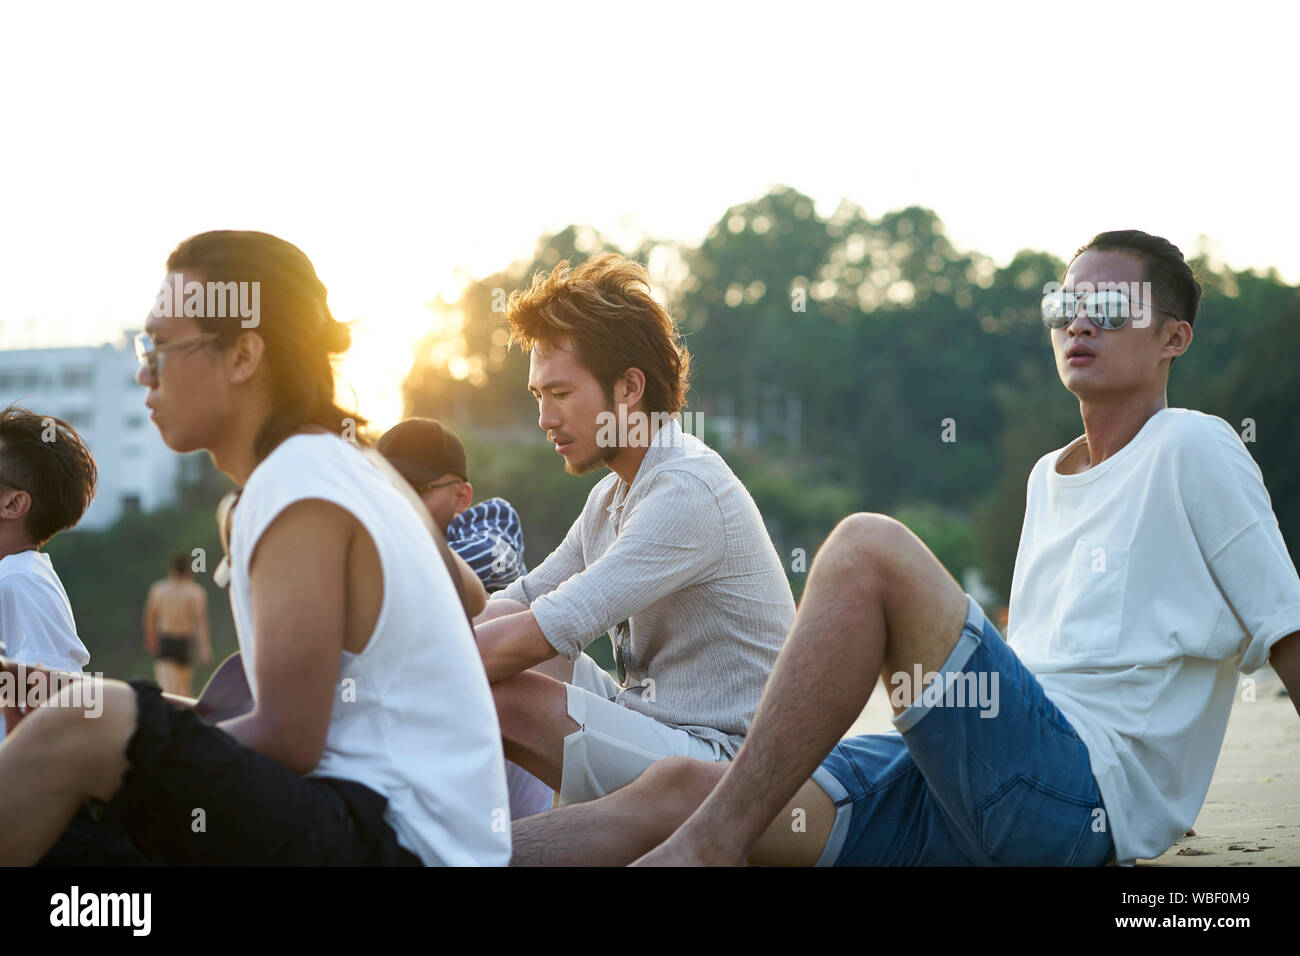 Gruppe von fünf jungen asiatischen Männer auf Sand Strand bei Dämmerung sitzen Stockfoto